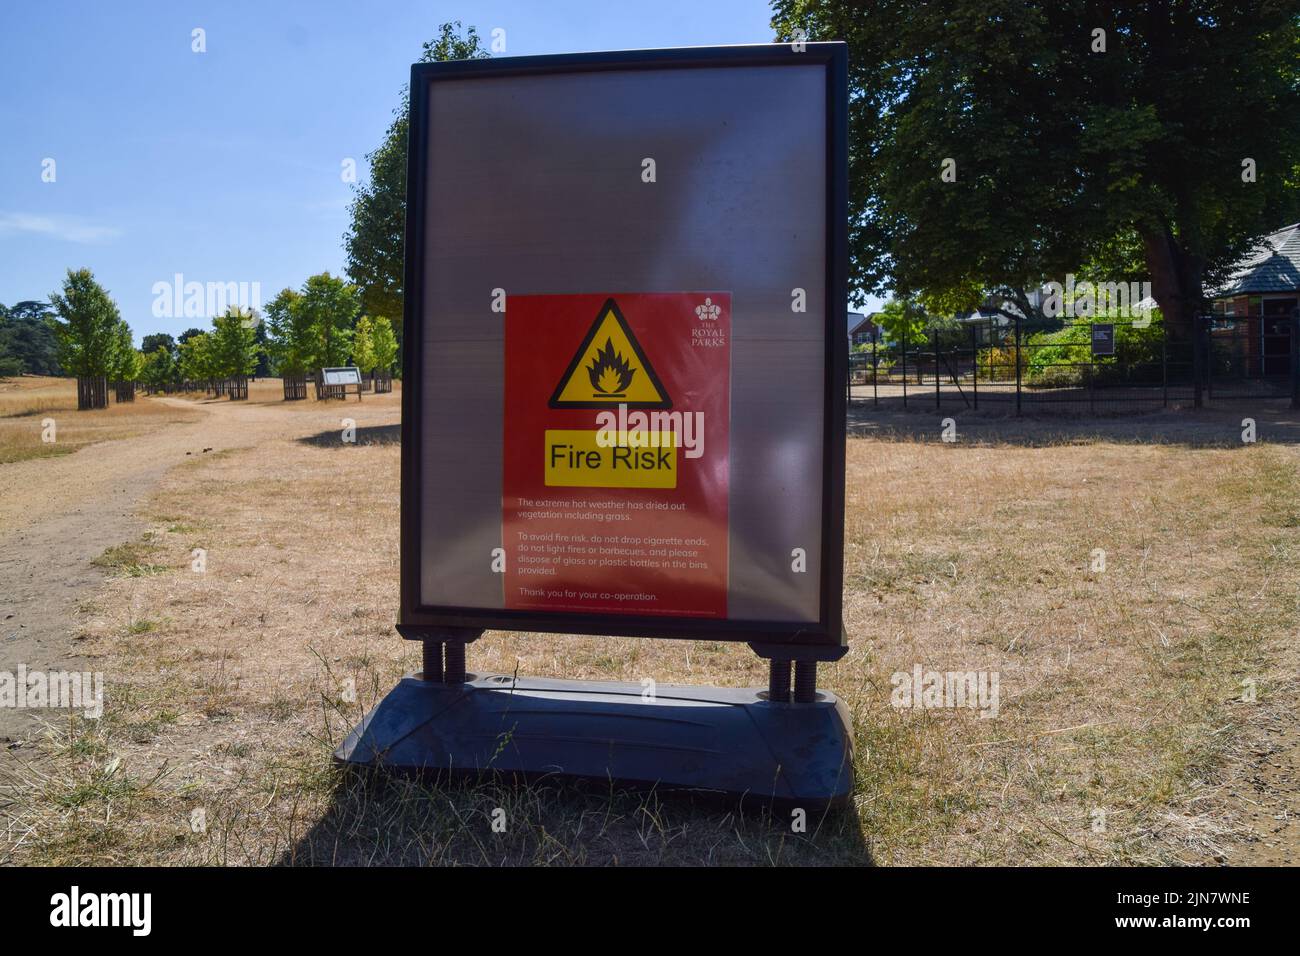 Un signe de risque d'incendie est visible dans un parc de Richmond sec alors que les vagues de chaleur et les conditions de sécheresse causées par le changement climatique se poursuivent dans tout le Royaume-Uni. Banque D'Images